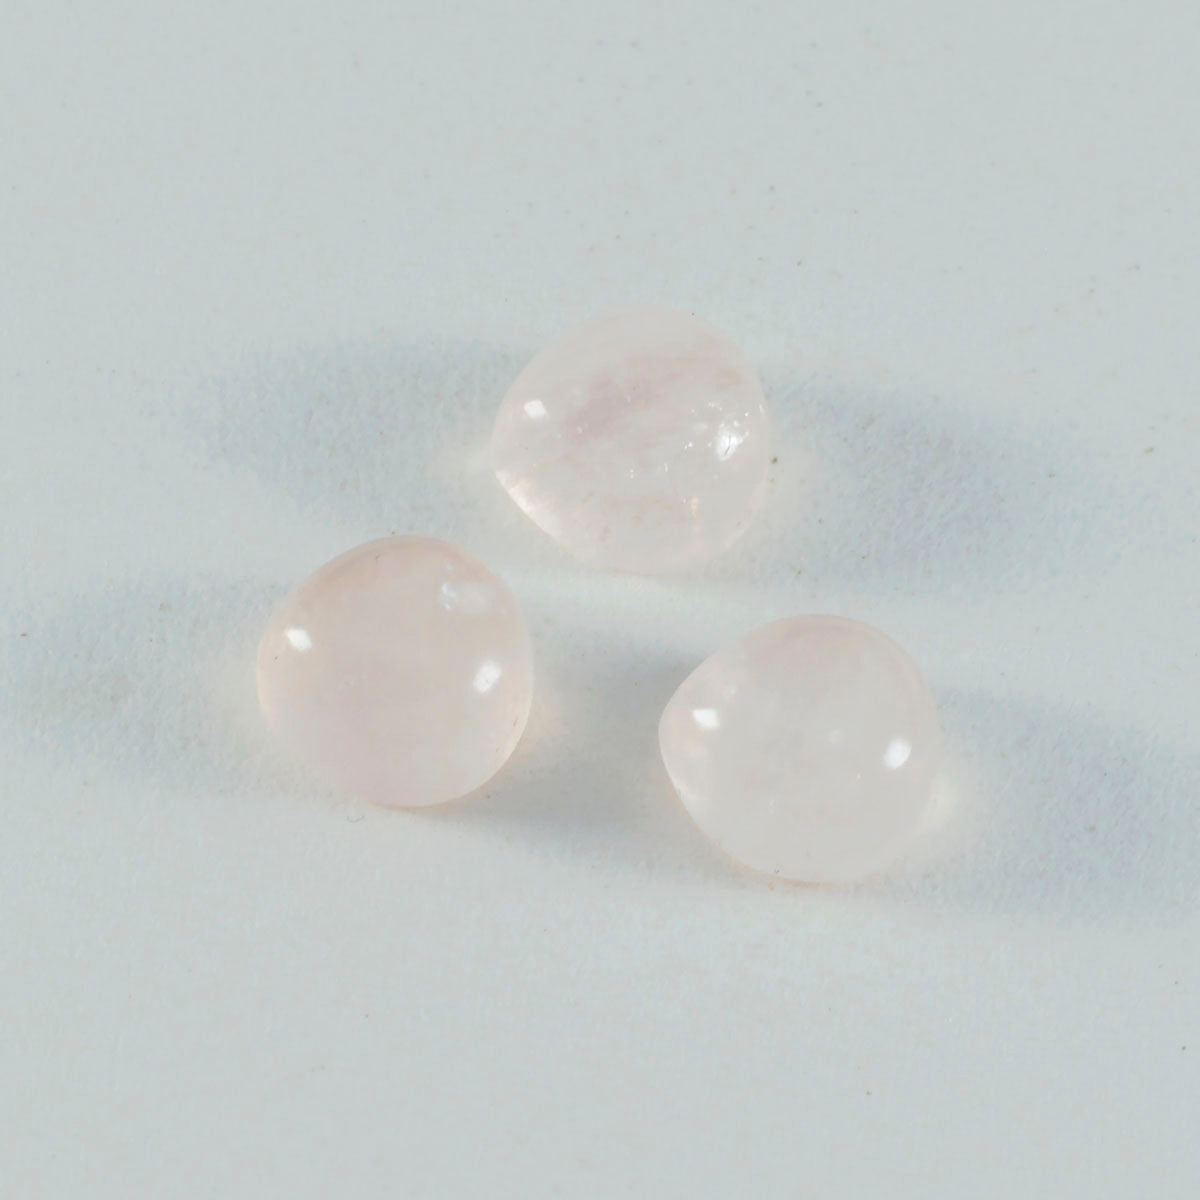 riyogems 1 pz cabochon di quarzo rosa rosa 14x14 mm a forma di cuore con pietre preziose sfuse di qualità A+1